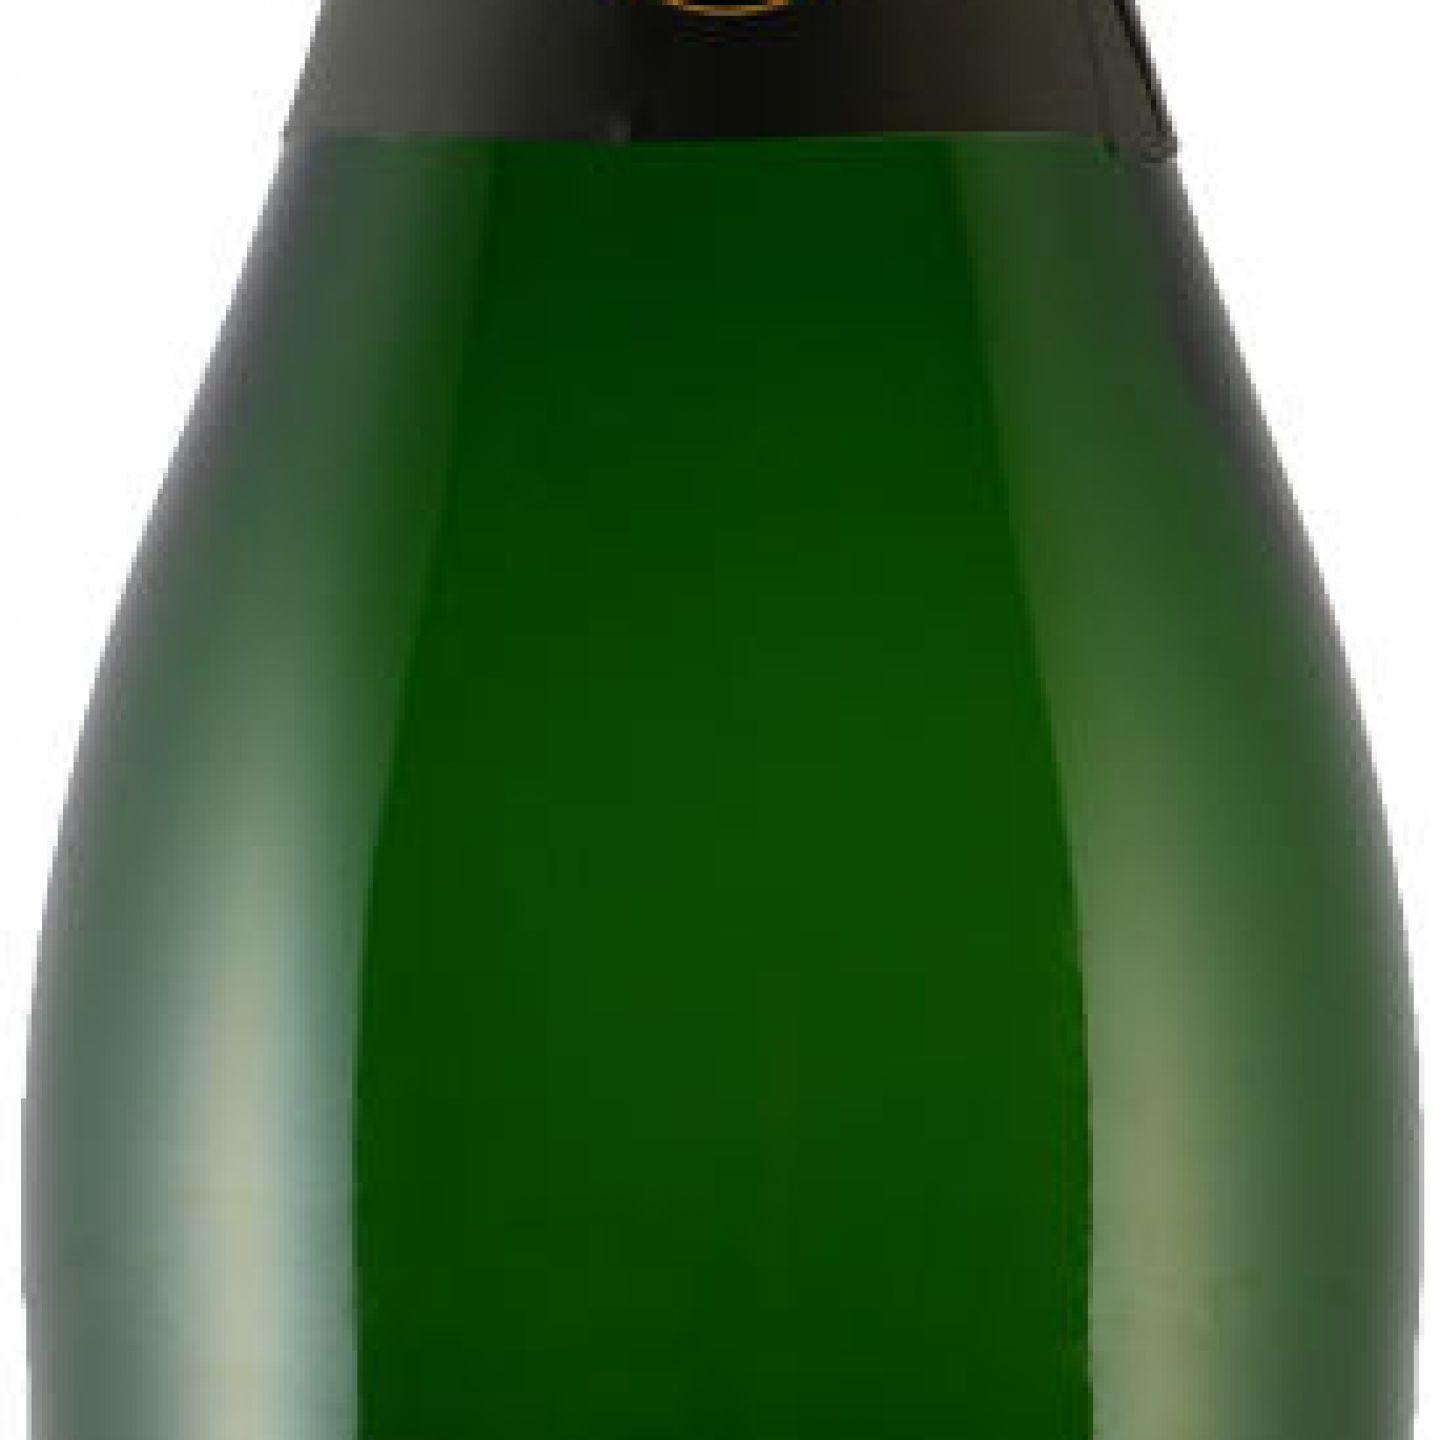 Carl Jung Bauernladen VEGAN Marke Tulln KG - Standort alkoholfrei Vinumis eine MOUSSEUX weiß - der - Freiwein 